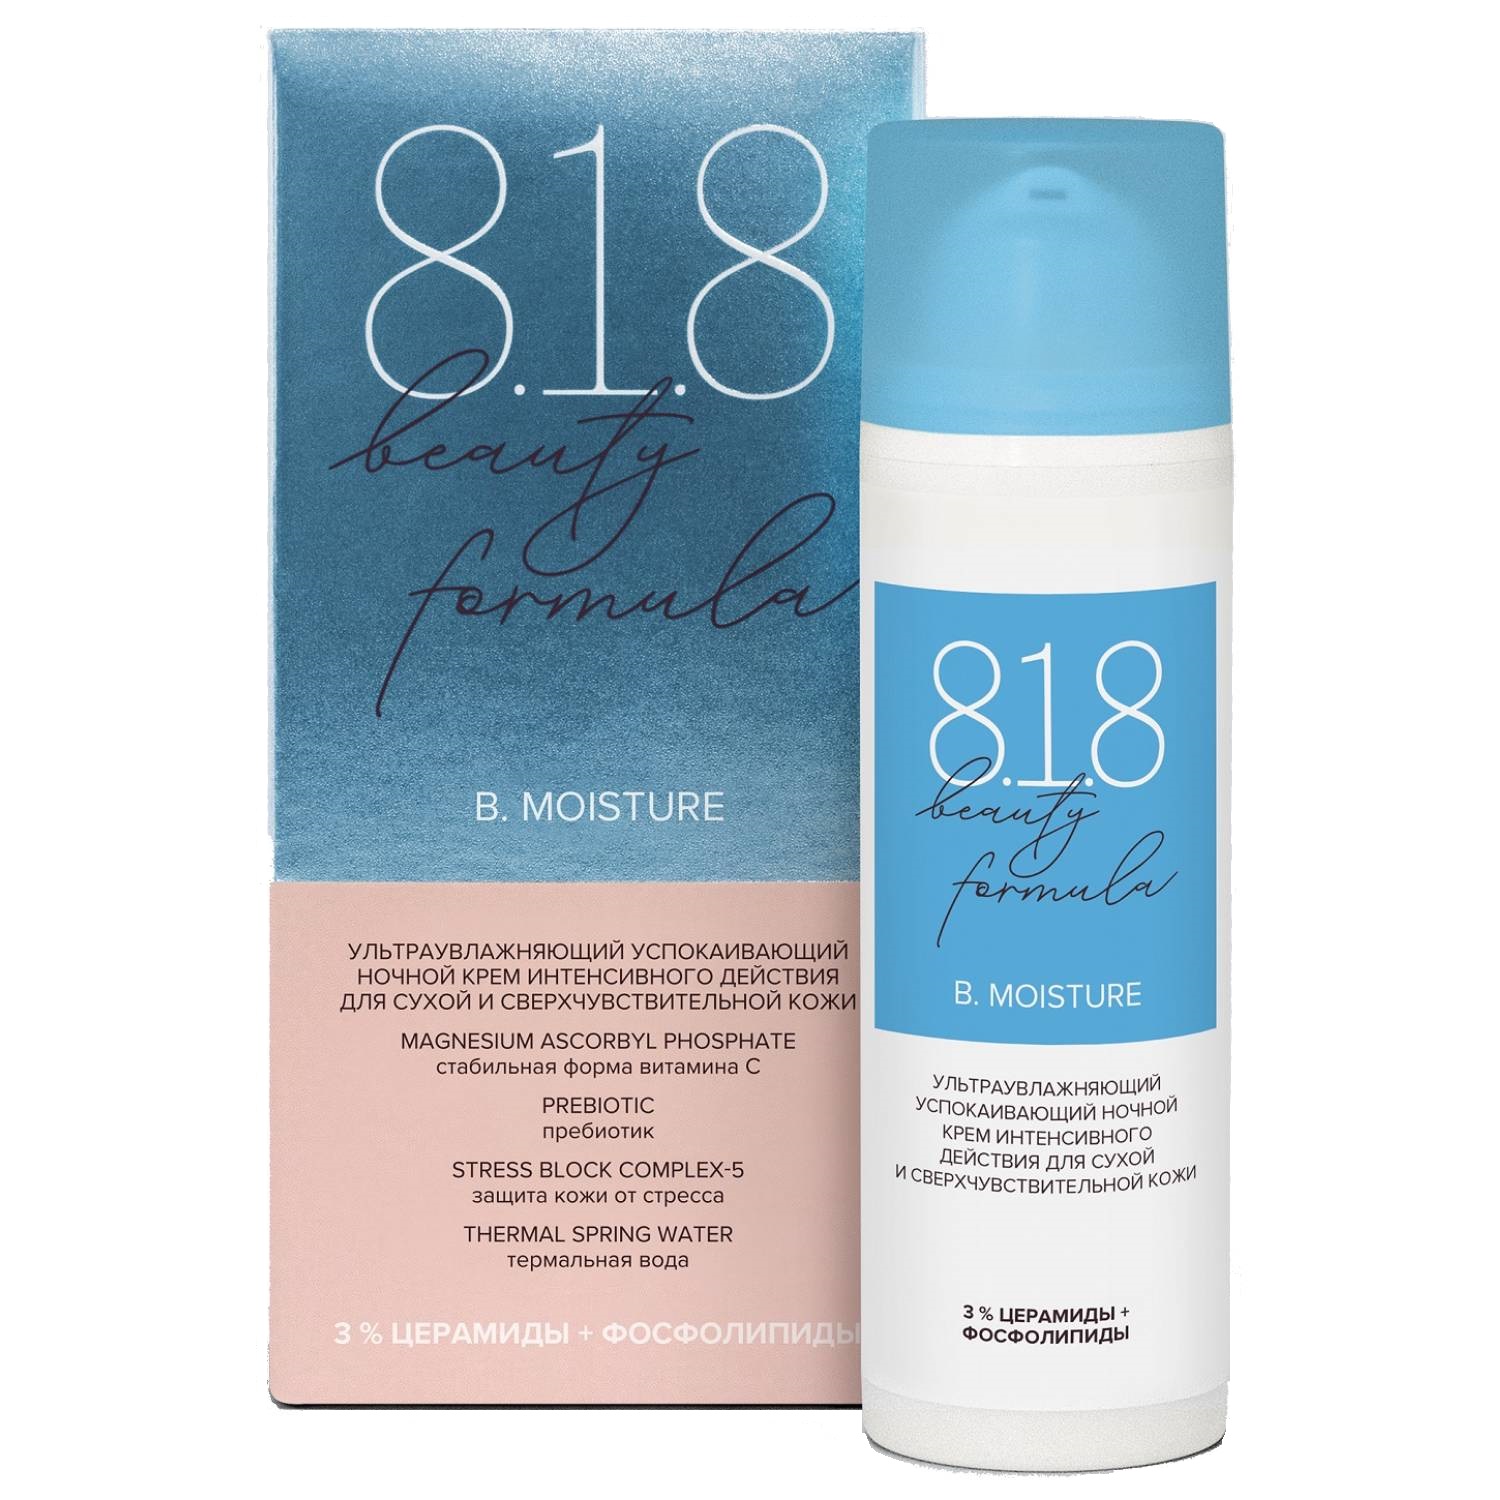 8.1.8 Beauty Formula Ультраувлажняющий успокаивающий ночной крем интенсивного действия для сухой и сверхчувствительной кожи, 50 мл (8.1.8 Beauty Formula, B. Moisture)